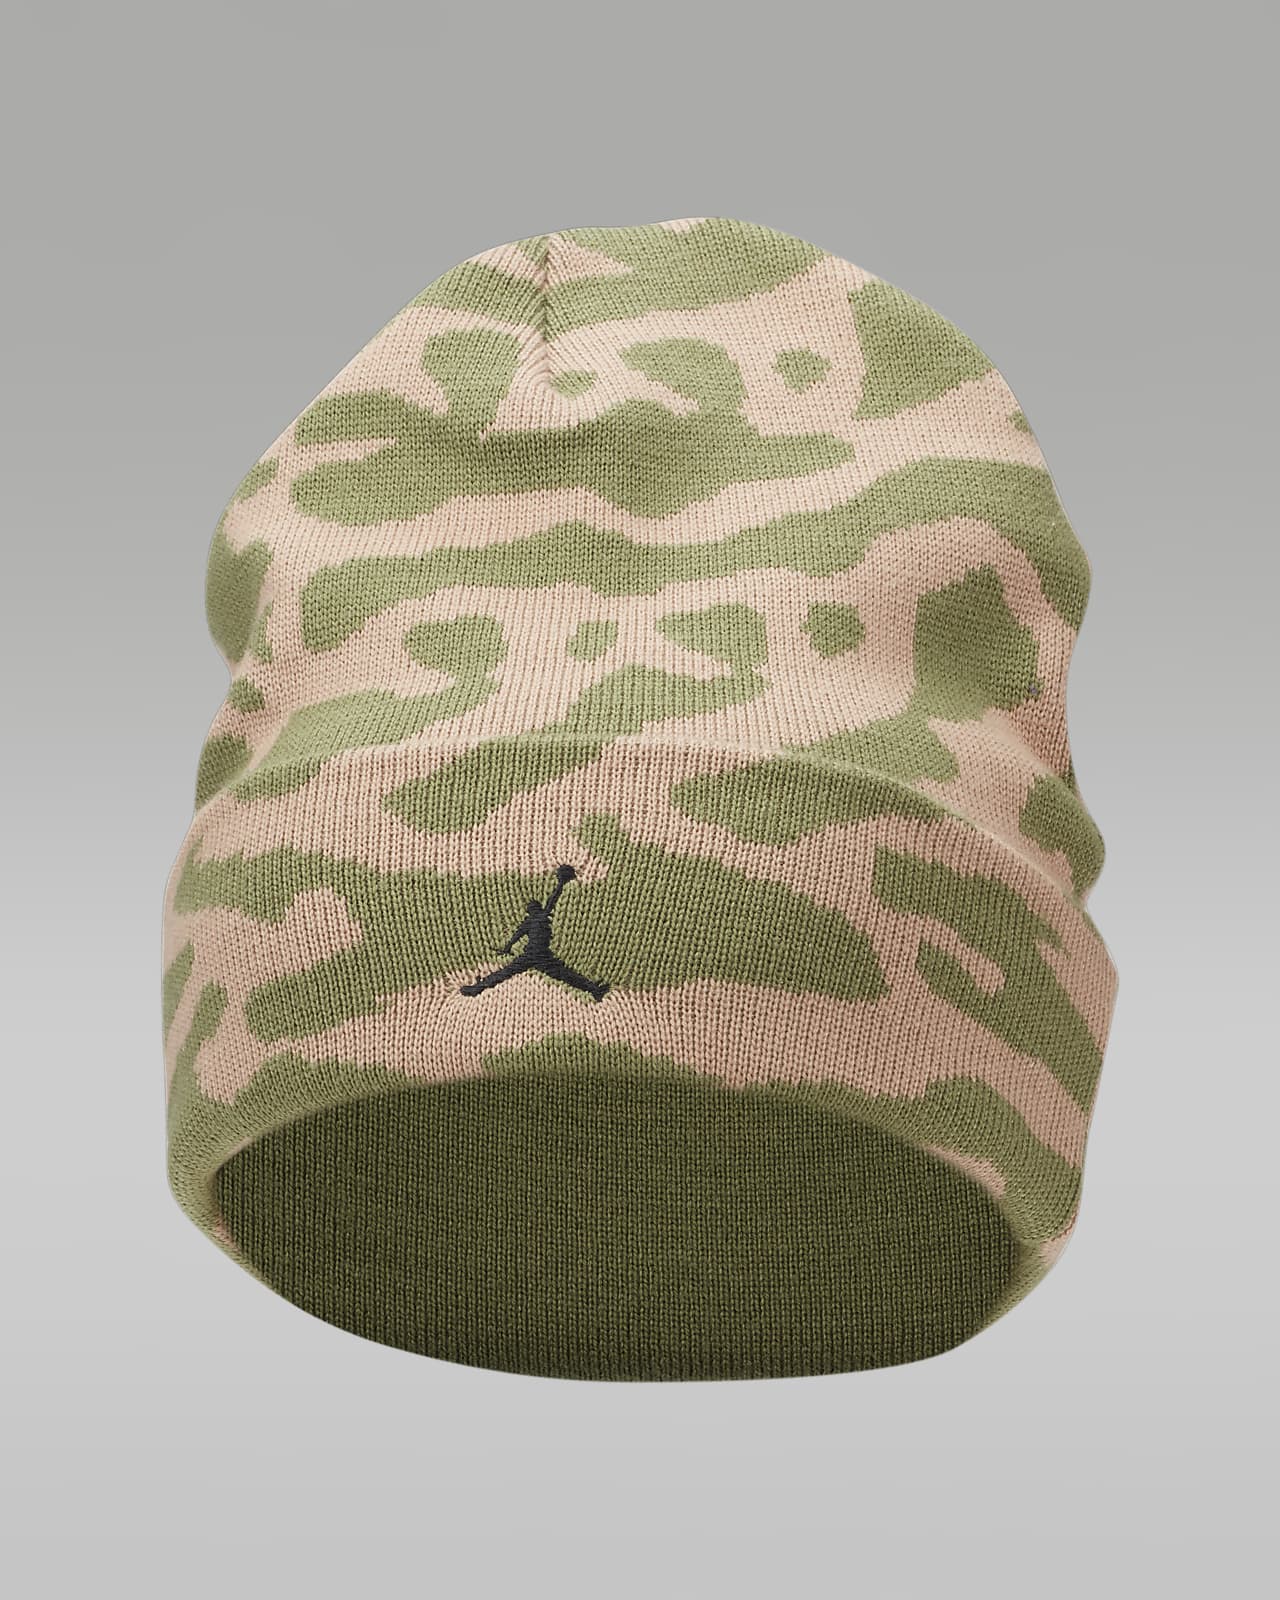 Jordan Peak 针织帽